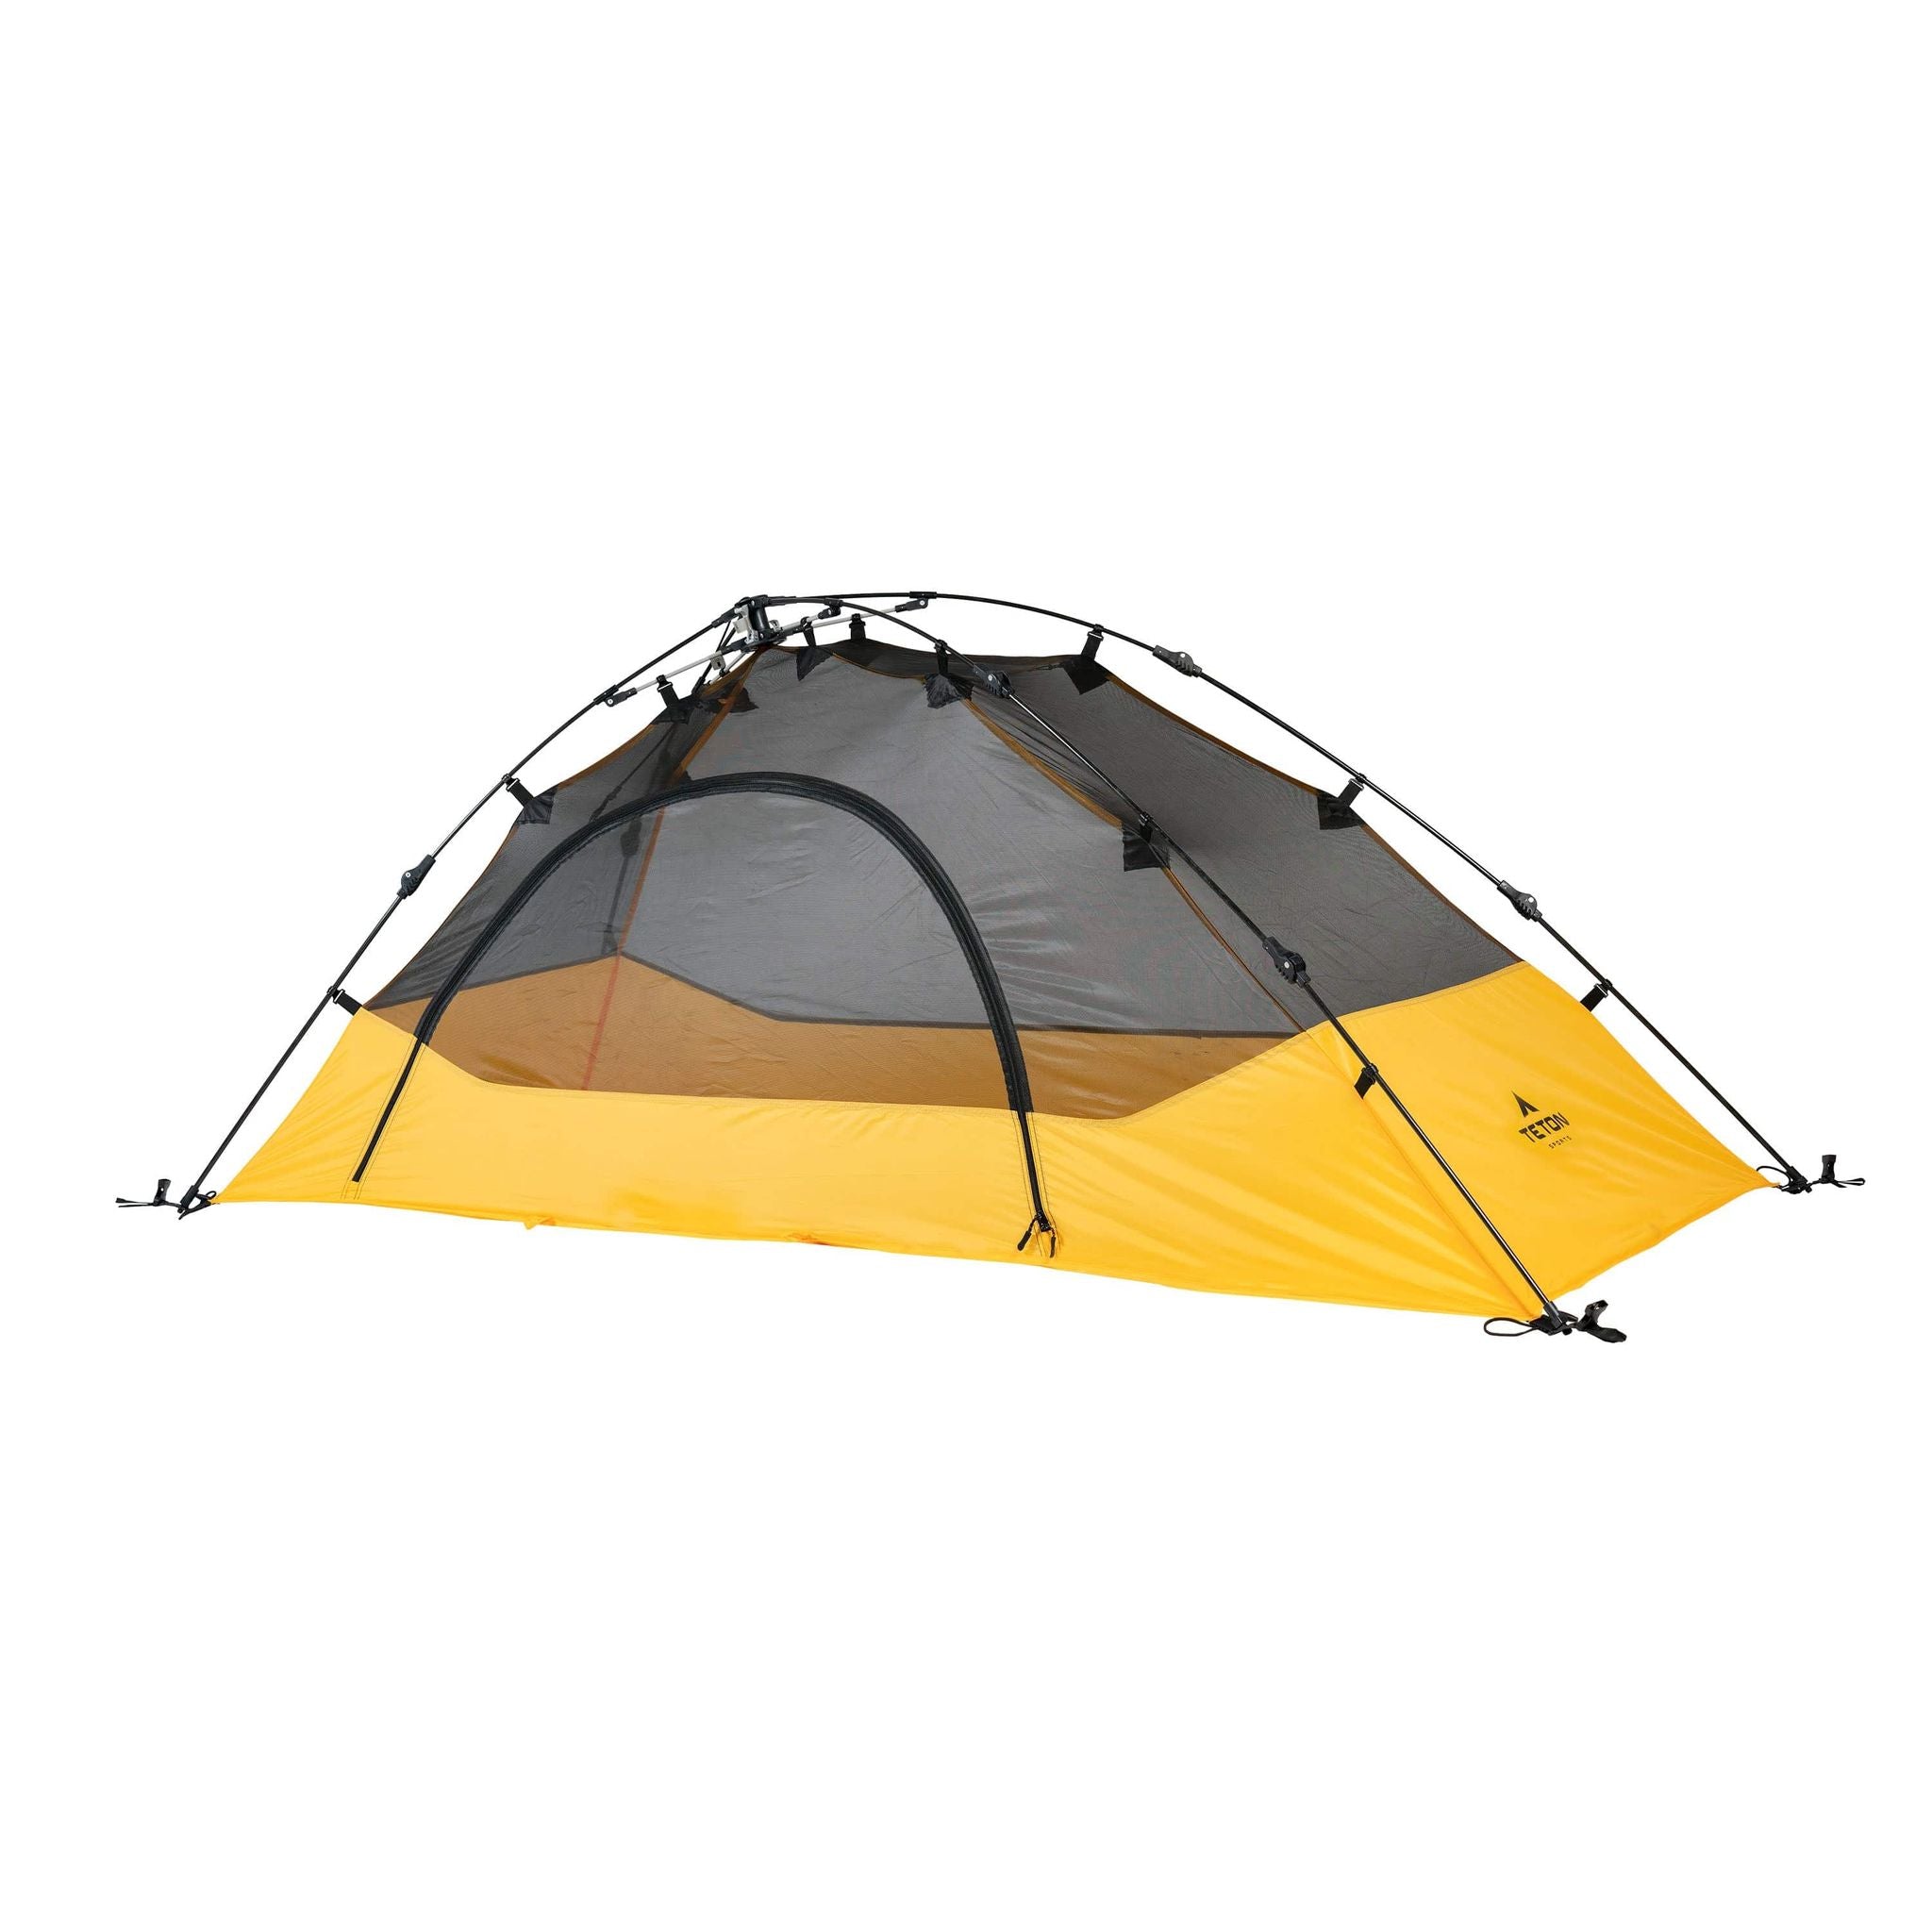 Teton Sports Vista 1-Person Quick Tent in Yellow